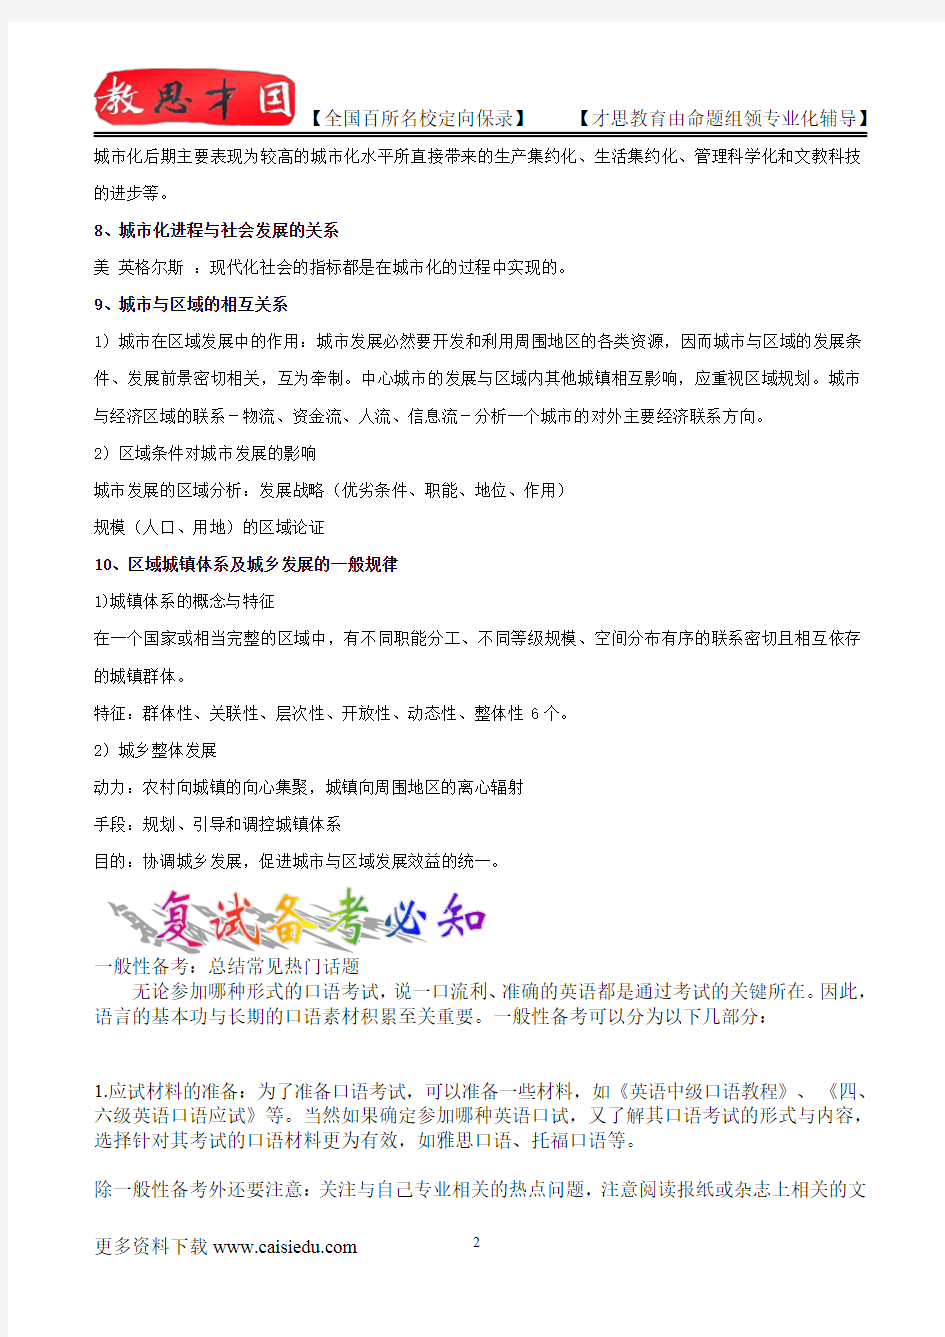 2015年北京大学城市规划原理笔记、复试真题,复习方法,考研大纲,考研流程,考研经验